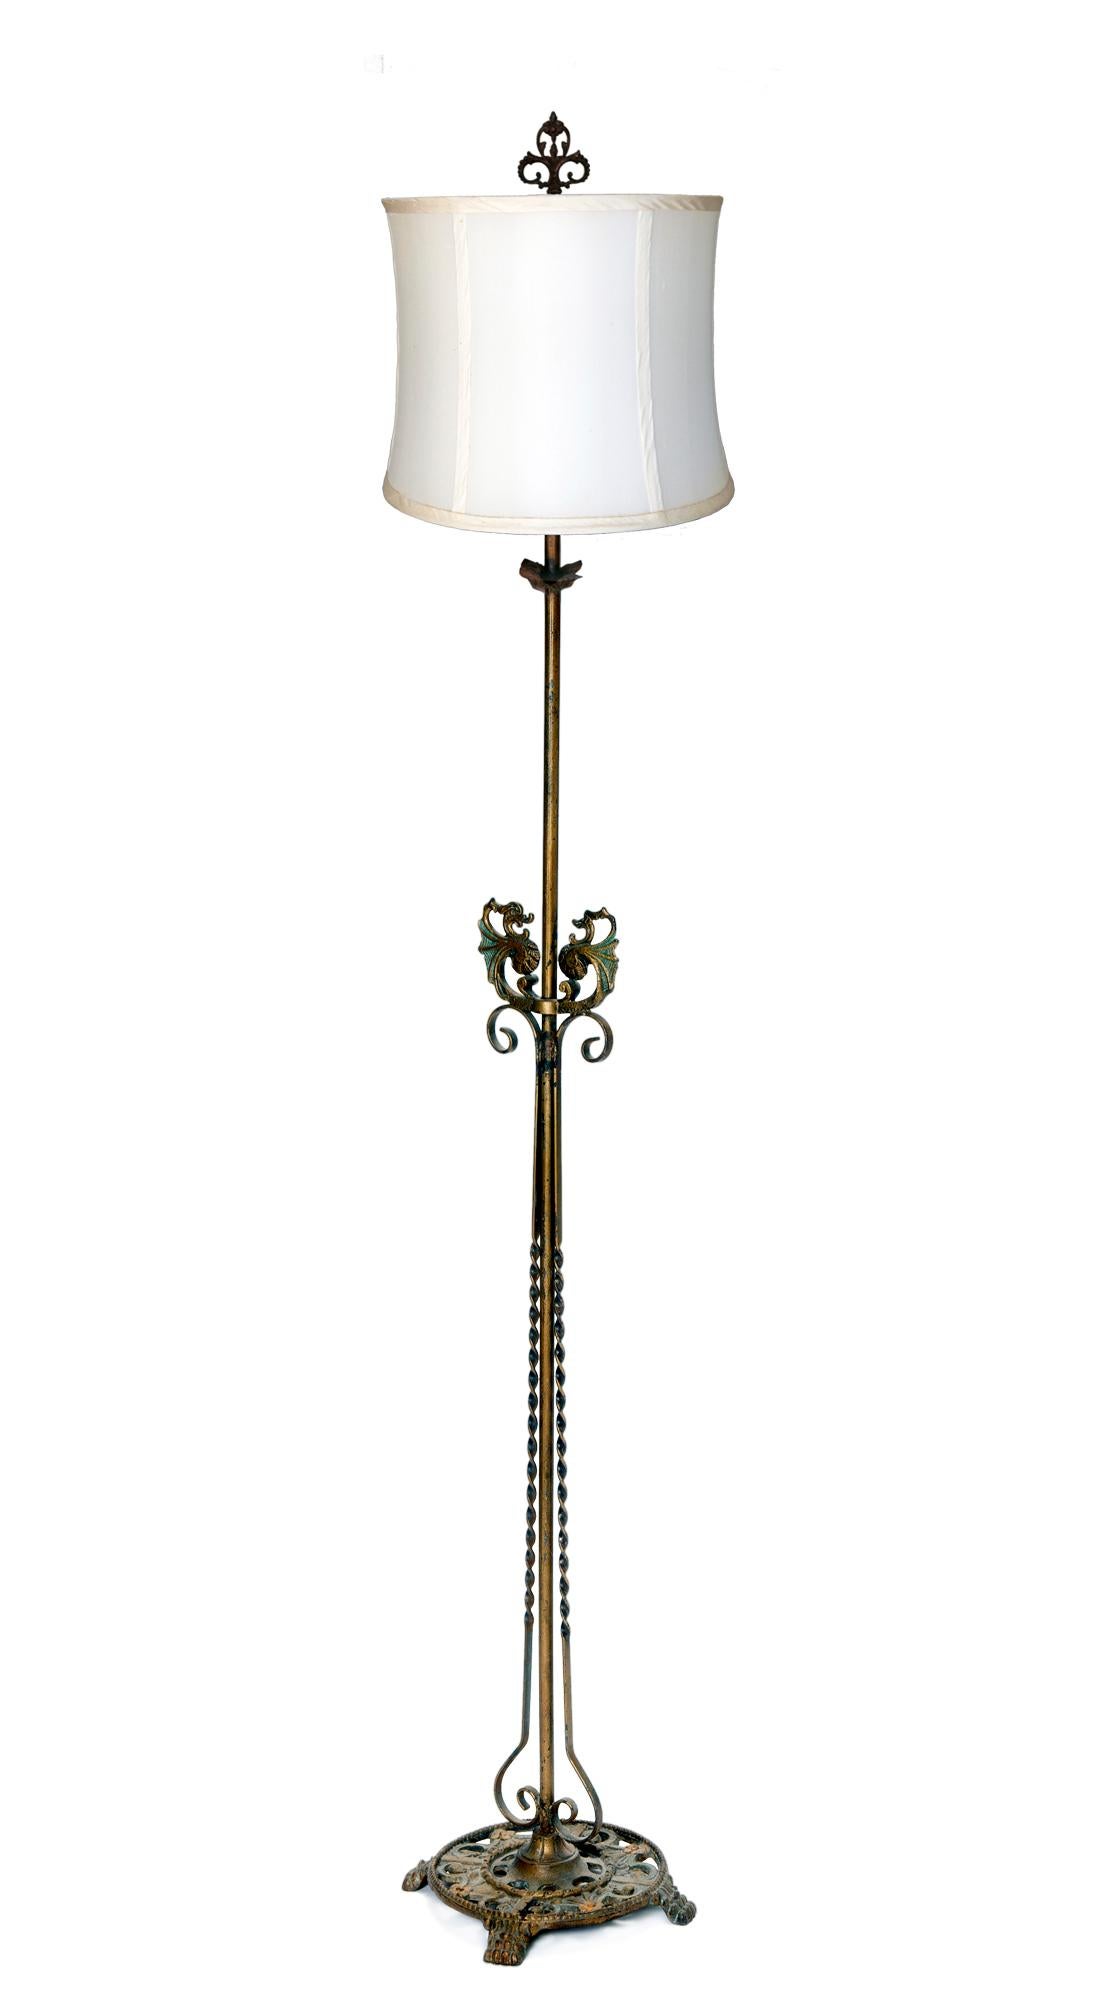 Klassische schmiedeeiserne Deco-Stehlampe aus den 1920er Jahren. Alle Originaloberflächen. Neu verkabelt, Messingfassungen, Standard-US-Glühlampen empfohlen. Die Lampe hat eine Zugkette für zwei Directional-Fassungen. Periodischer Seidenschirm.